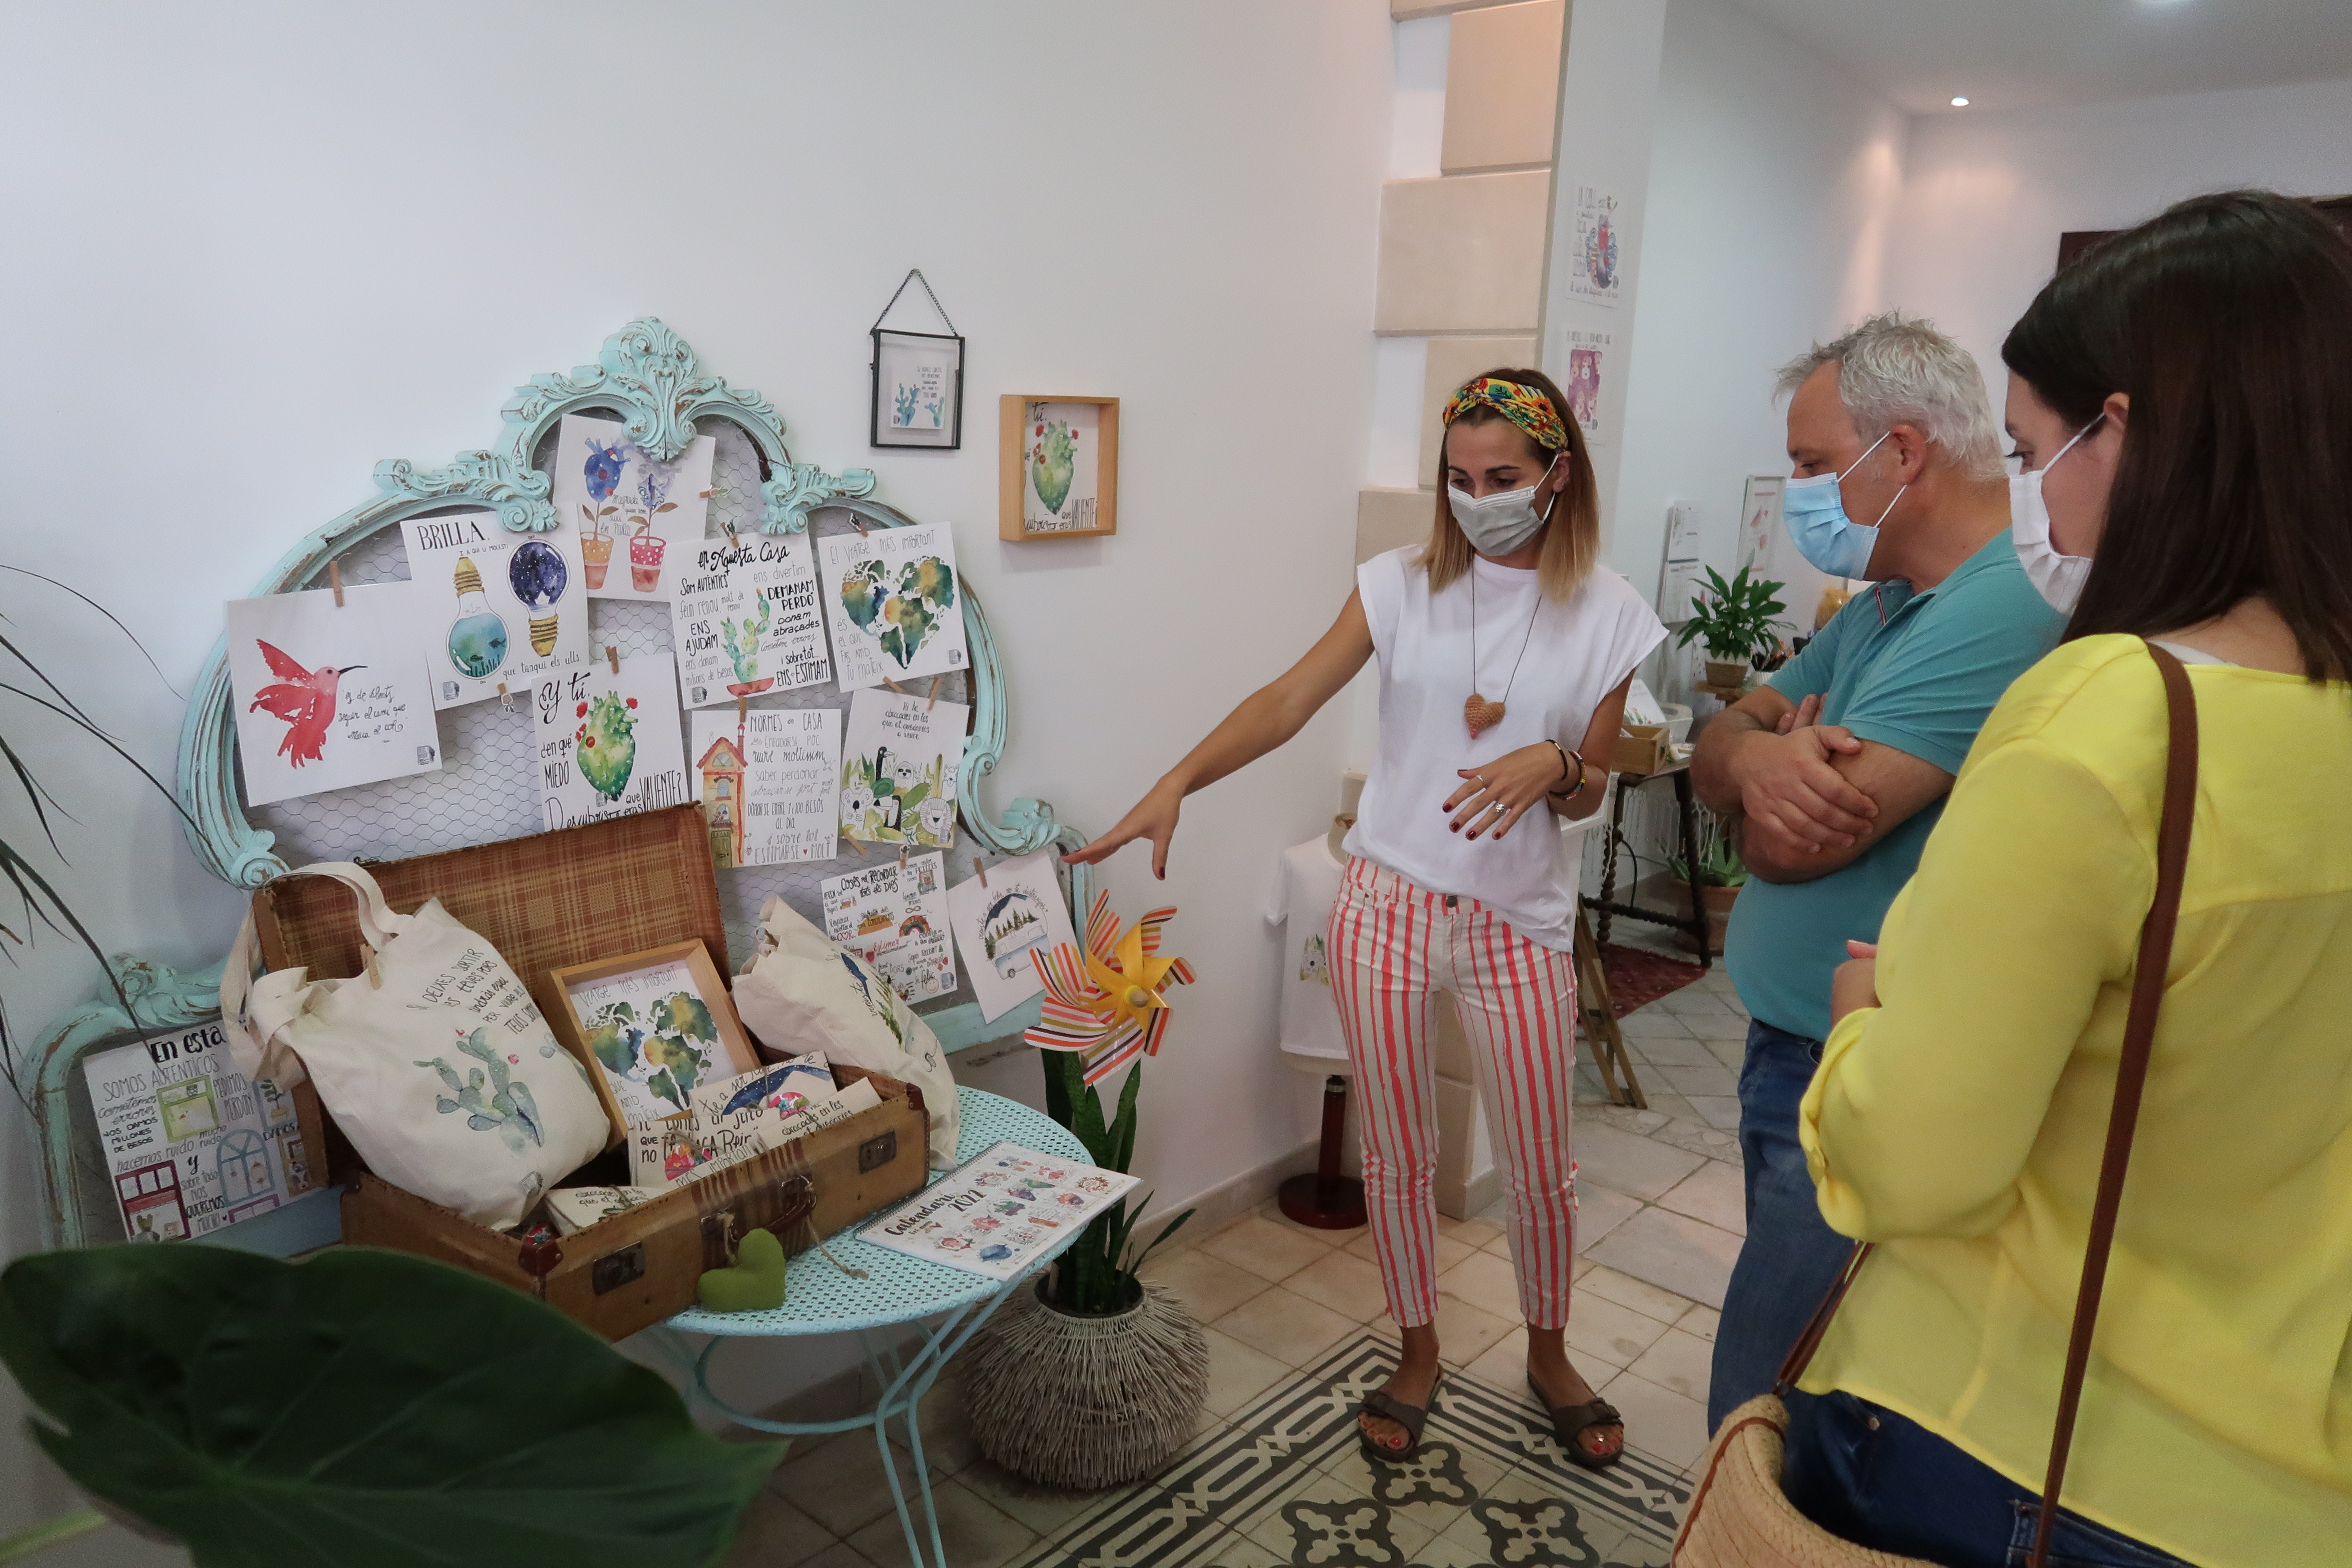 El conseller Alzamora ha visitat el taller de neusbosch.art, on l'artesana d'il·lustració prepara i mostra els seus productes.